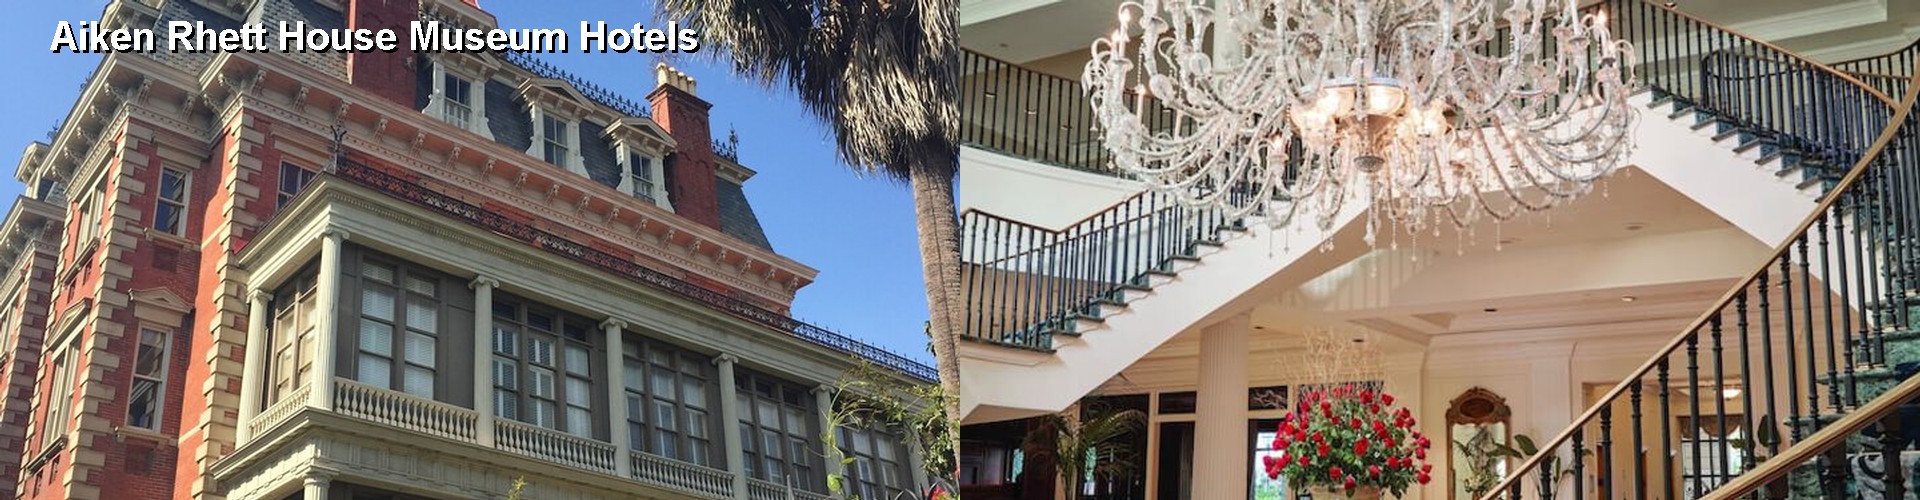 5 Best Hotels near Aiken Rhett House Museum